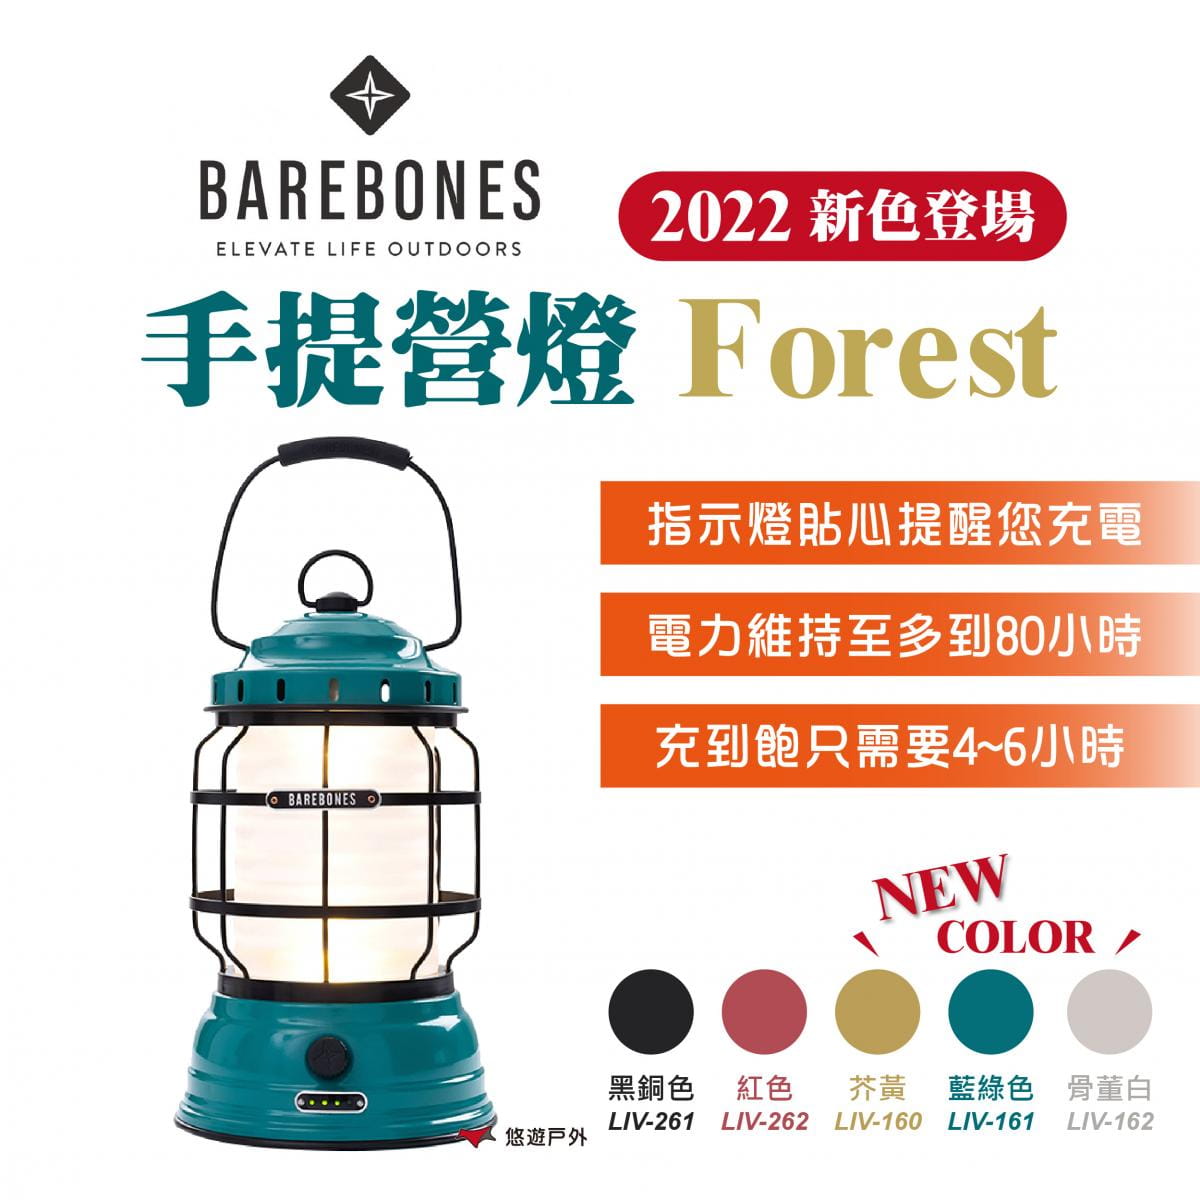 【Barebones】手提營燈 Forest (悠遊戶外) 0